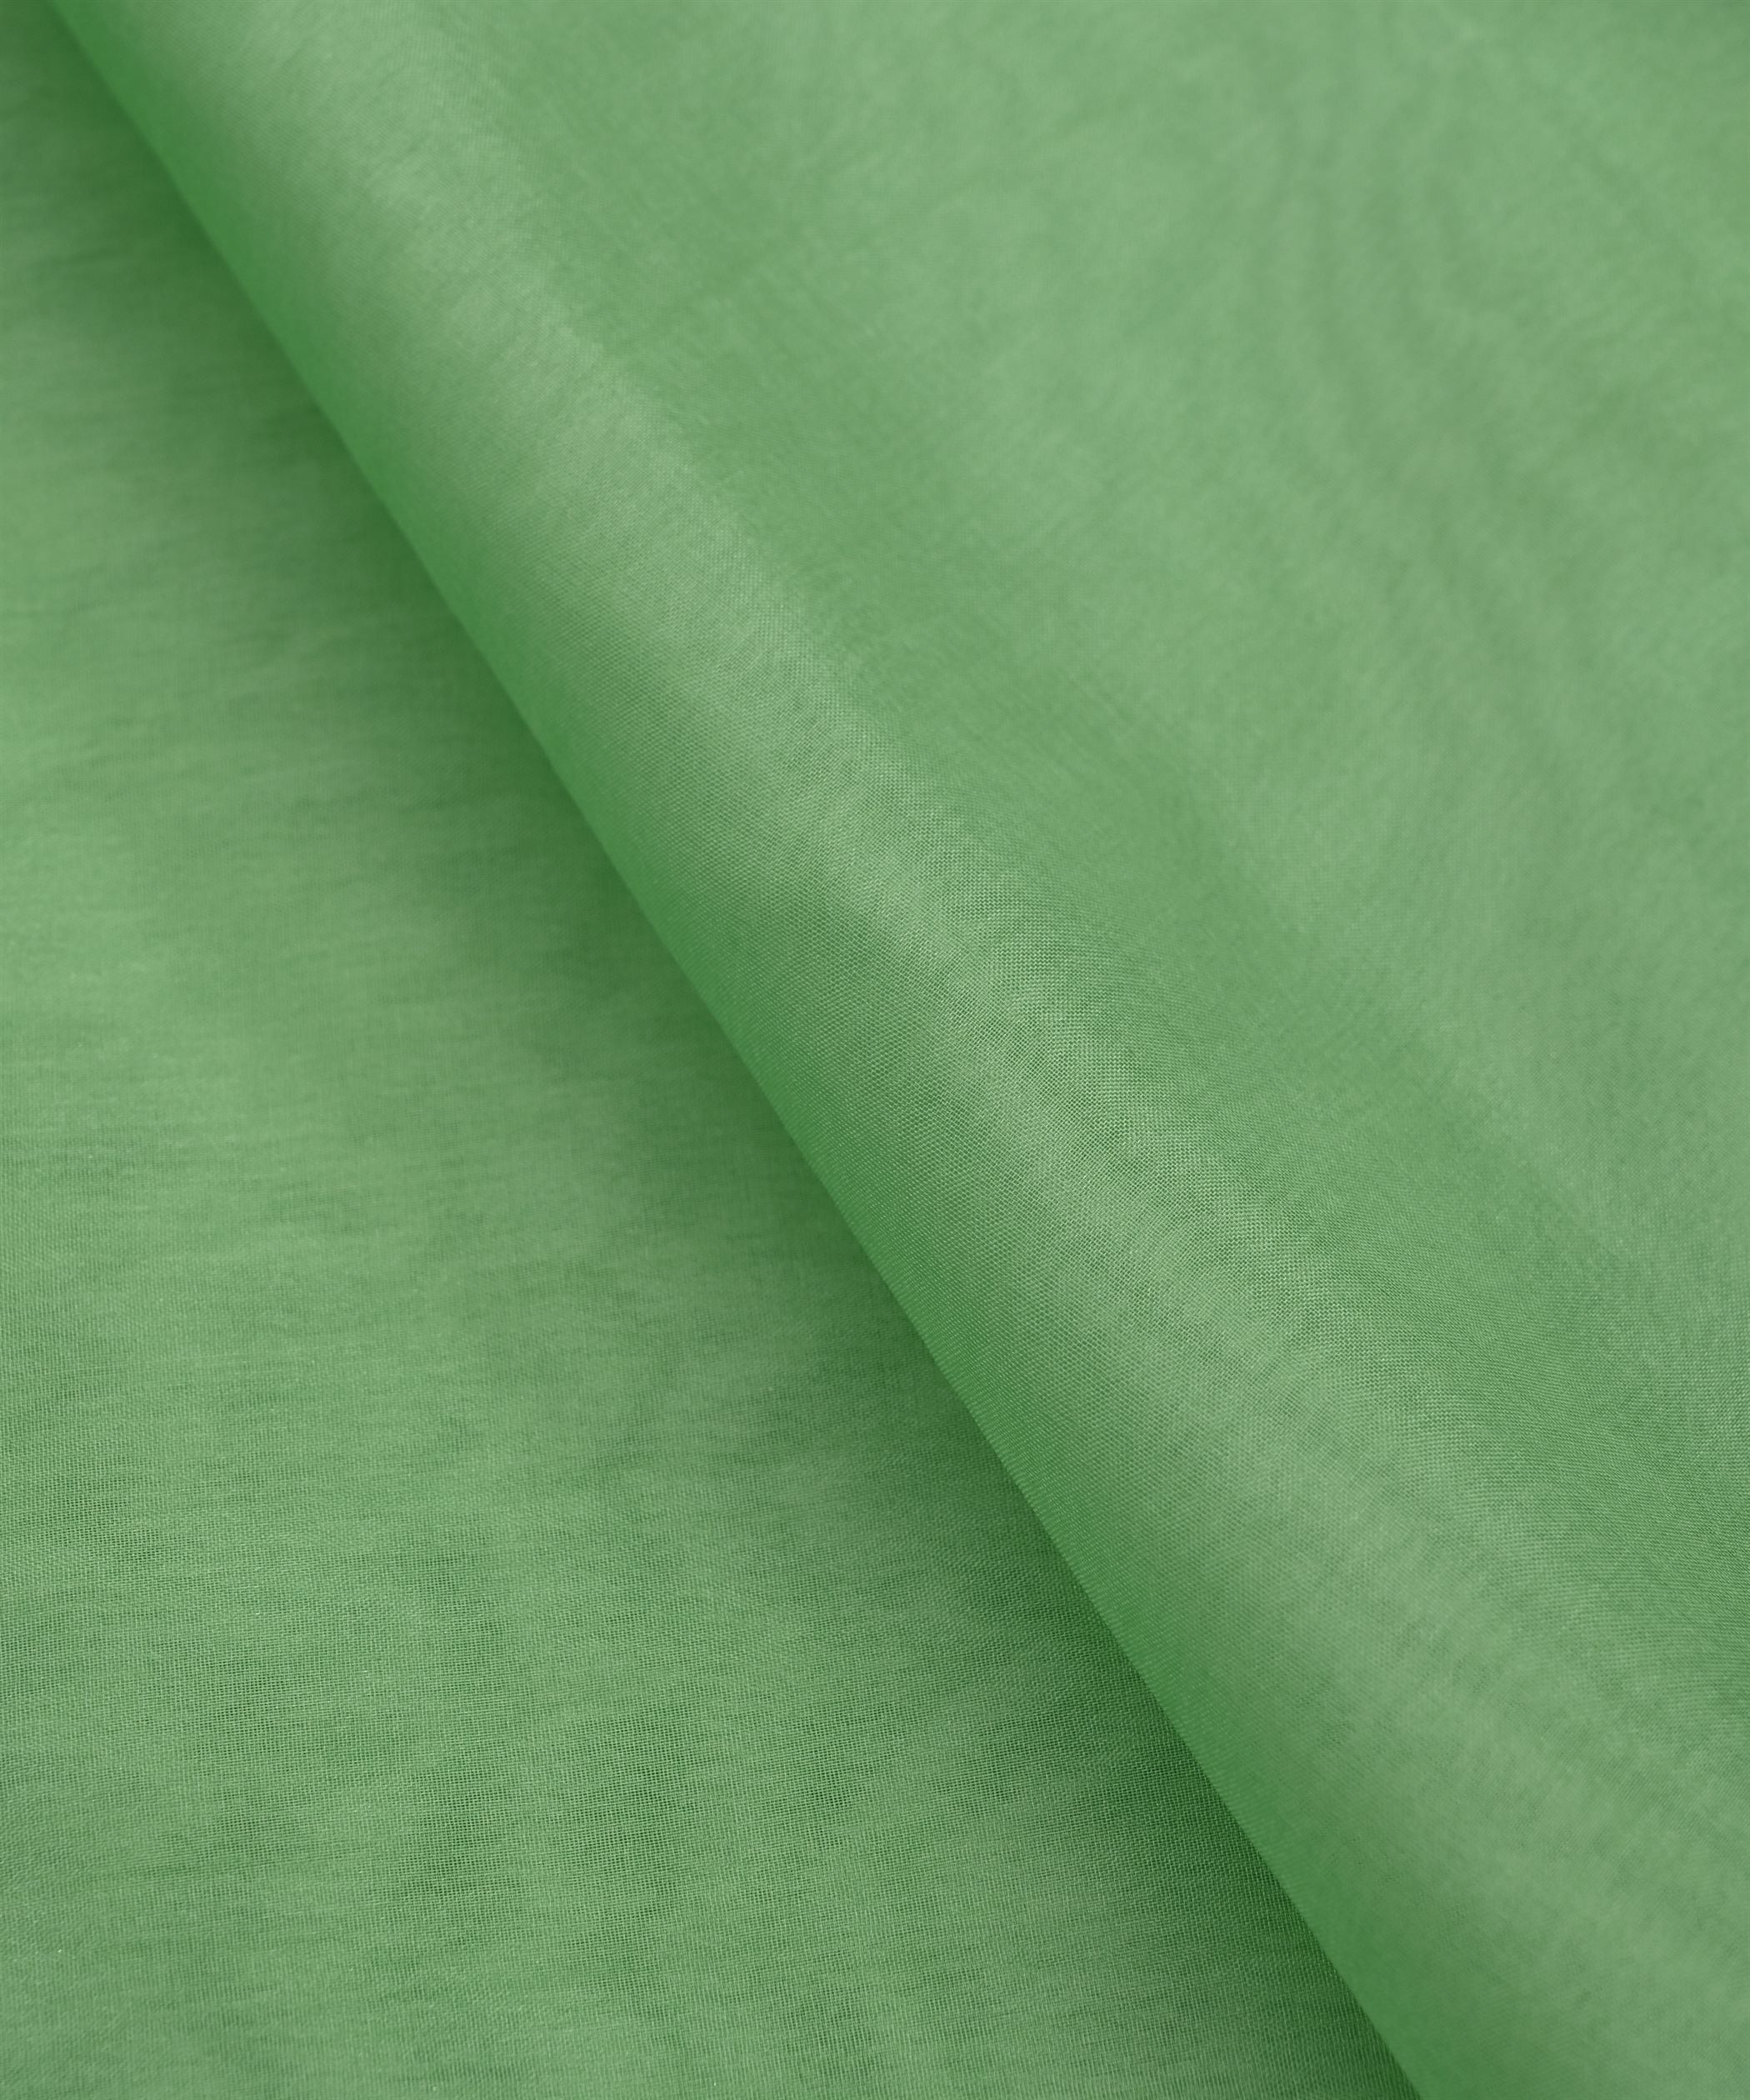 Fern Green Plain Dyed Organza Fabric